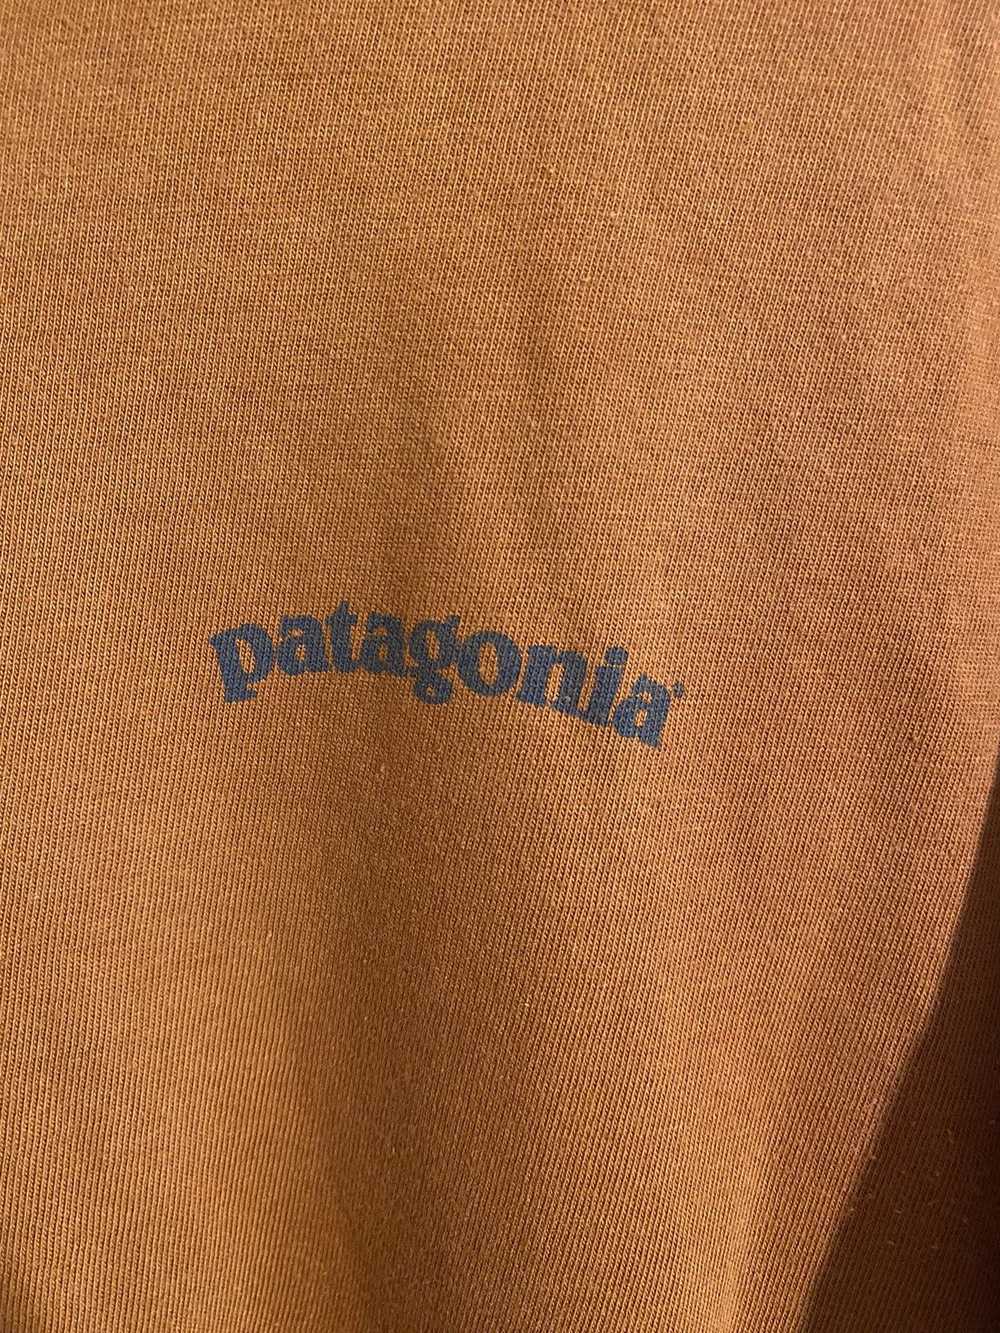 Patagonia × Vintage Patagonia t-shirt vintage 90 s - image 4